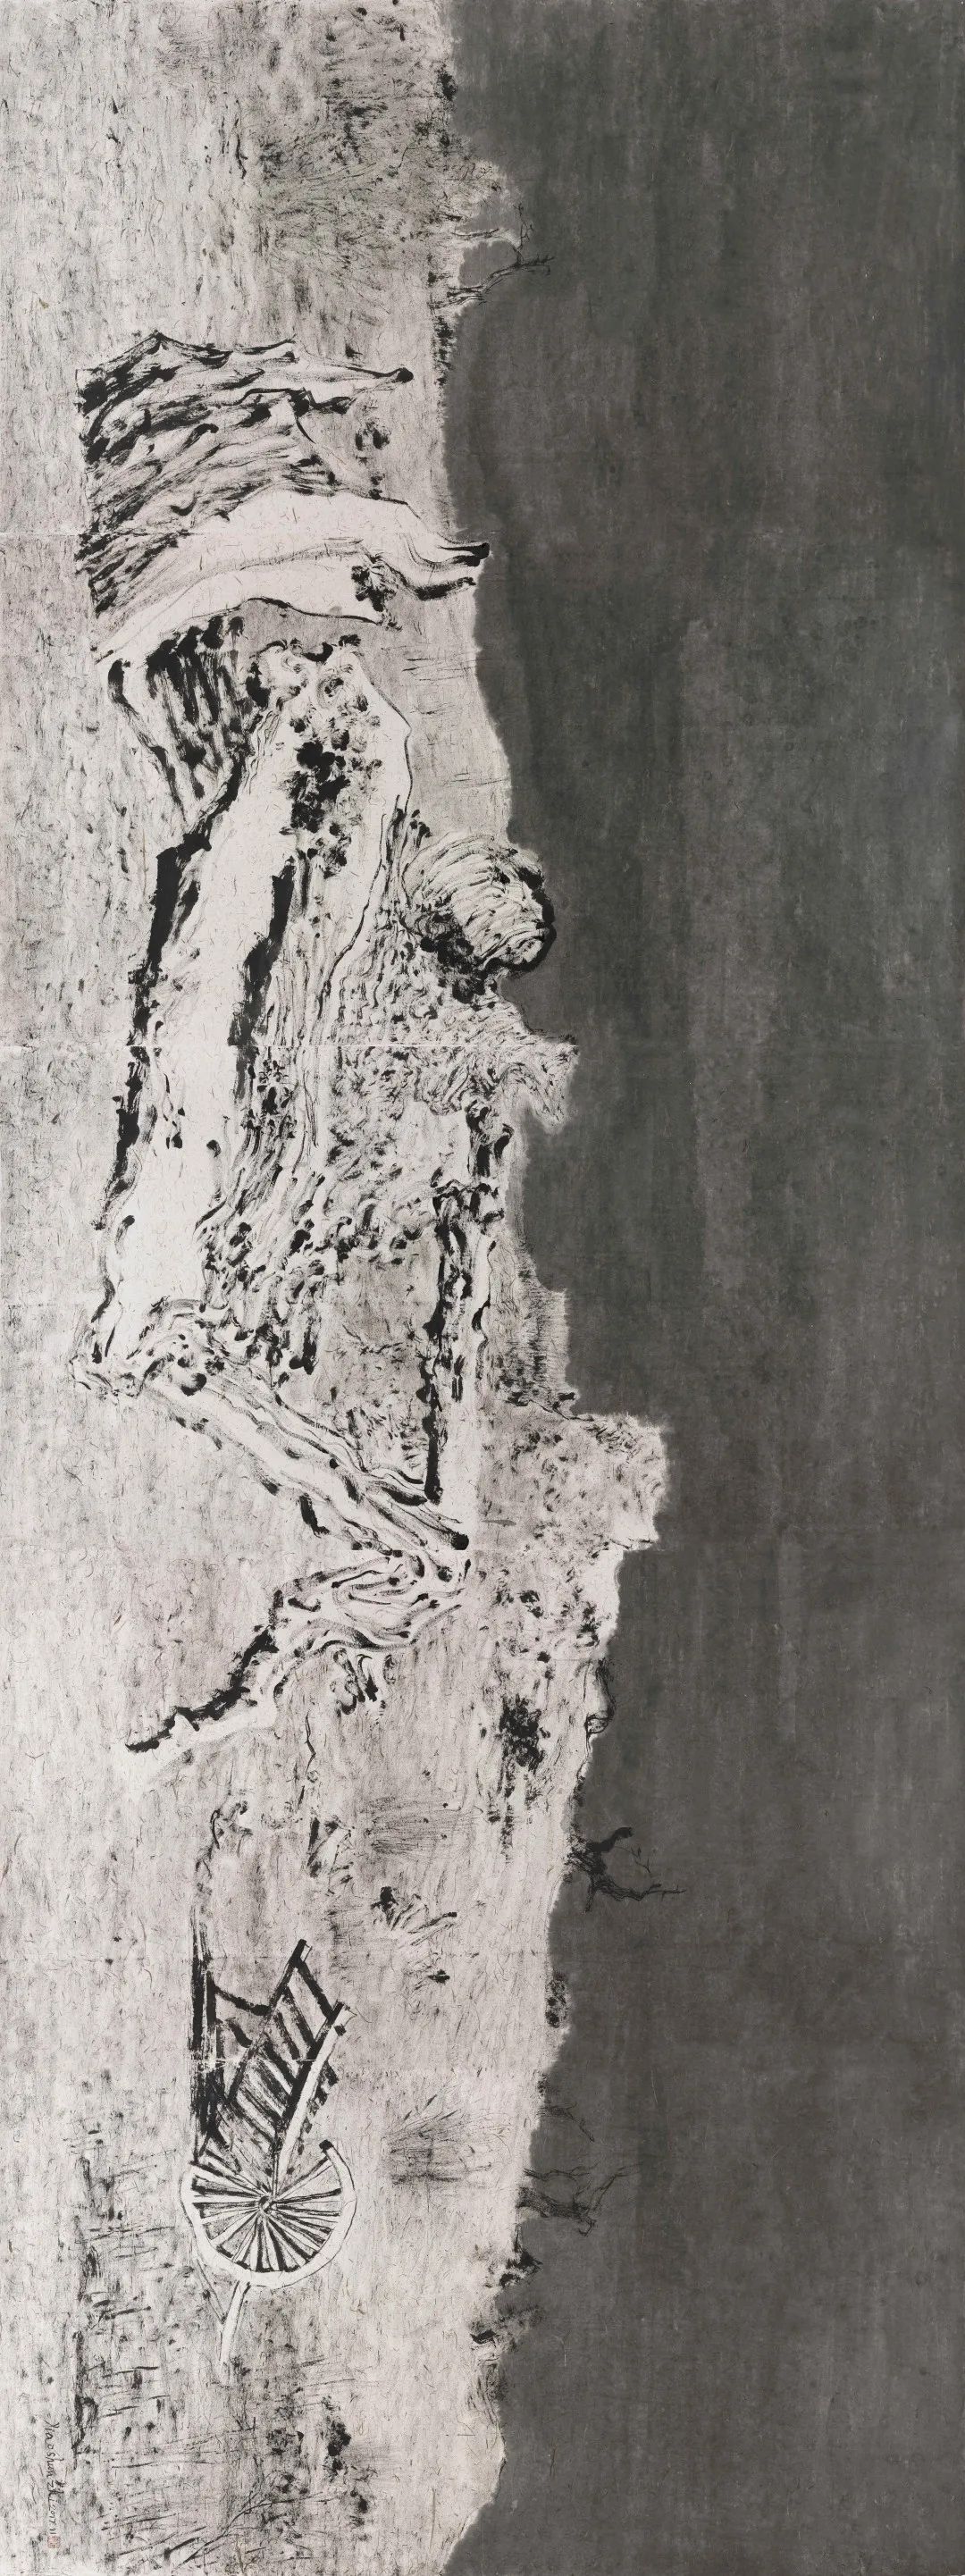 著名画家肖舜之应邀参展，“味之无尽——肖舜之 肖智元 肖雅丹作品展”将于12月21日在桂林美术馆开幕